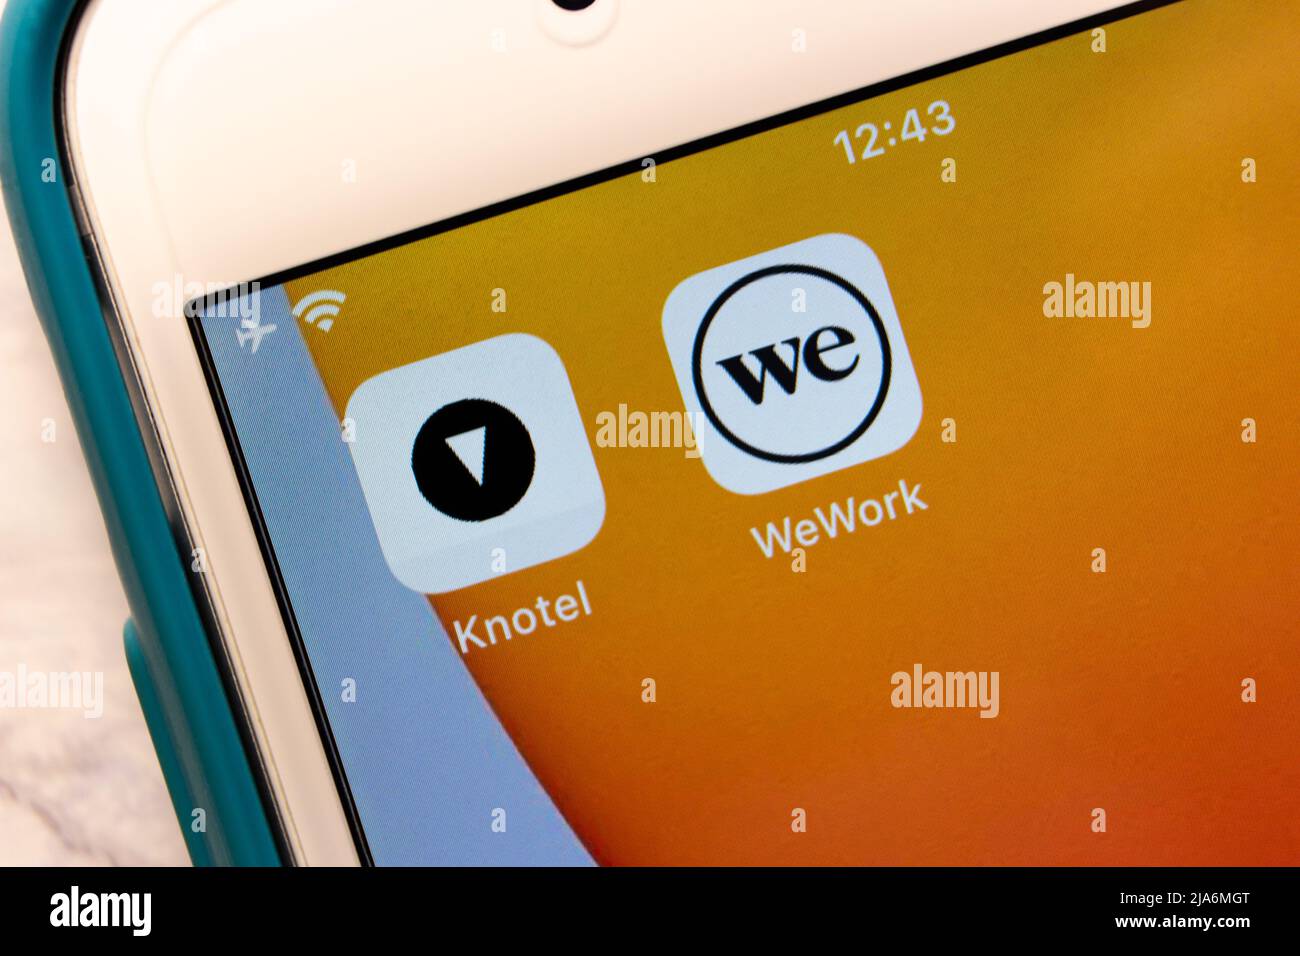 Kumamoto, JAPON - Fév 8 2021 : icônes Knotel et WeWork sur l'écran de l'iPhone. Knotel est souvent considéré comme le concurrent de WeWork Banque D'Images